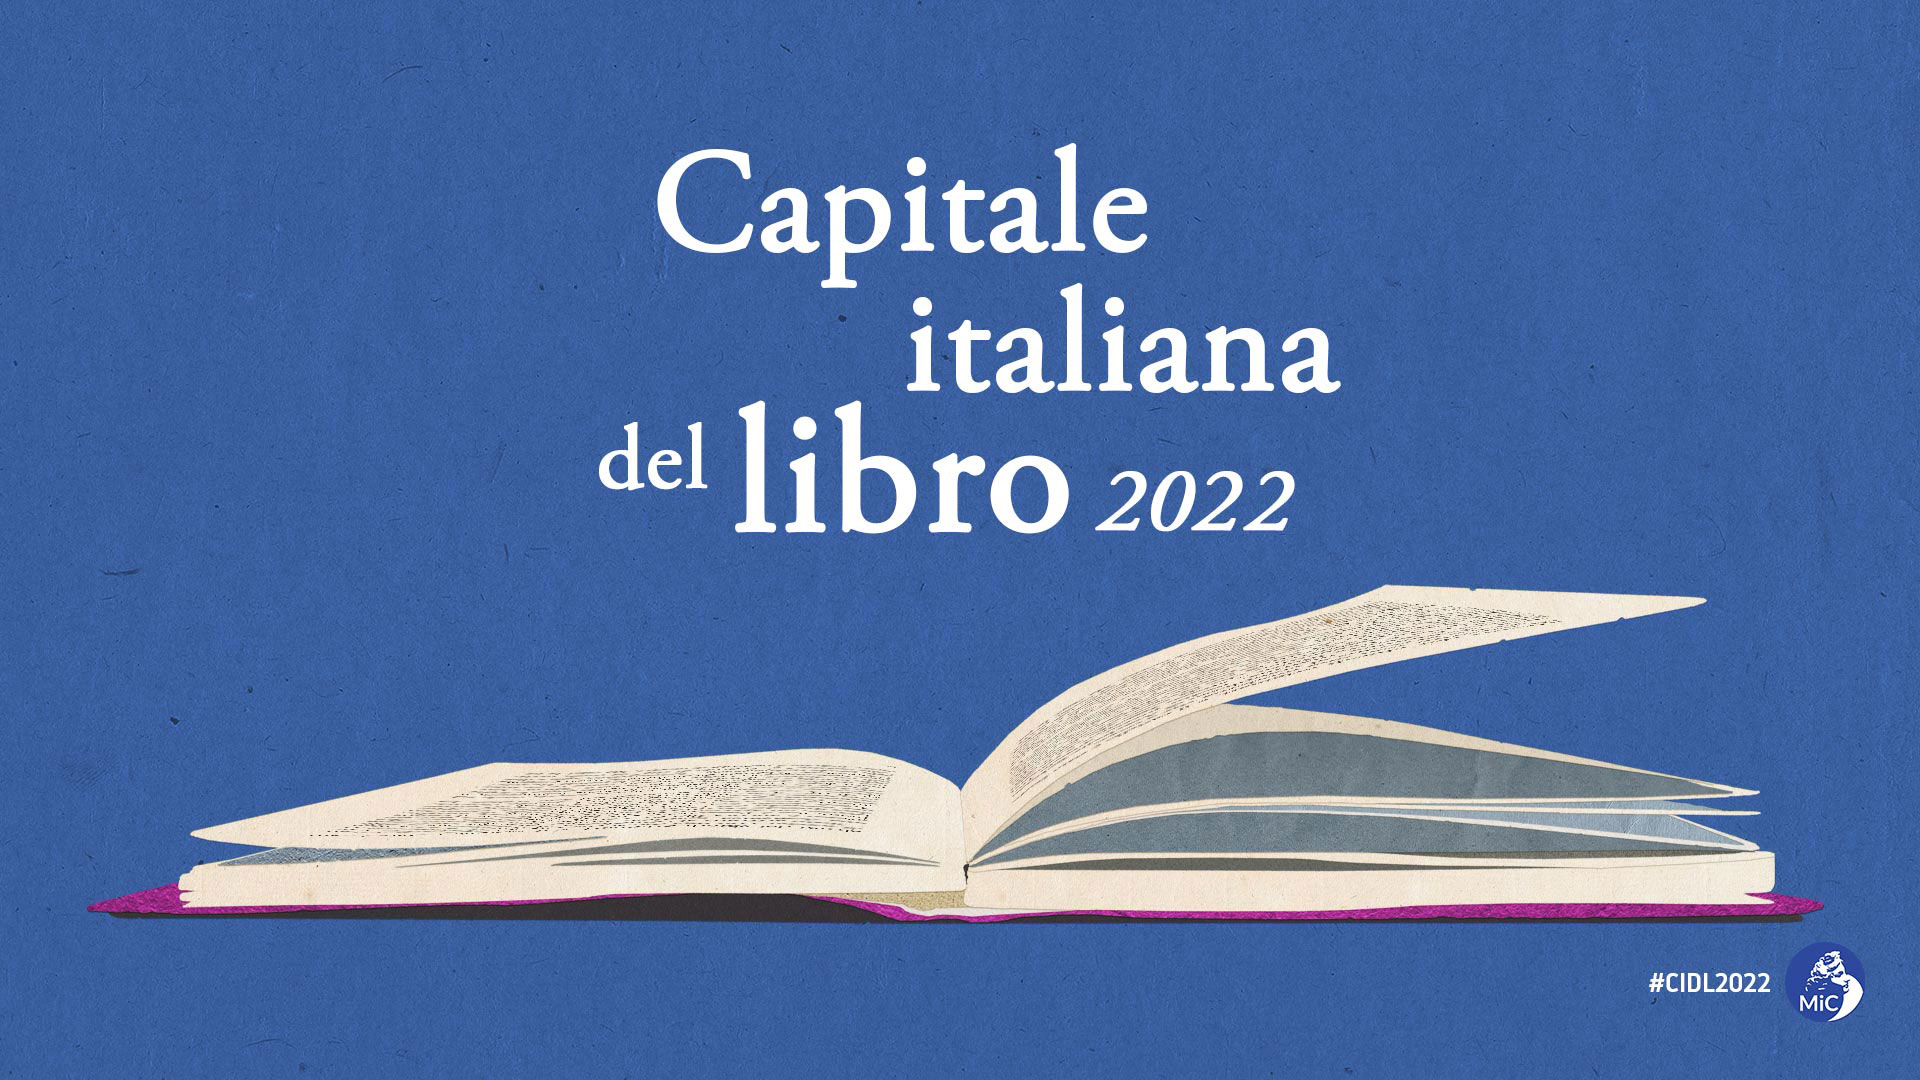 Aliano fra le otto città finaliste candidate al titolo di “Capitale italiana del libro 2022″, il presidente Bardi: “Simbolo della ripartenza della Basilicata”